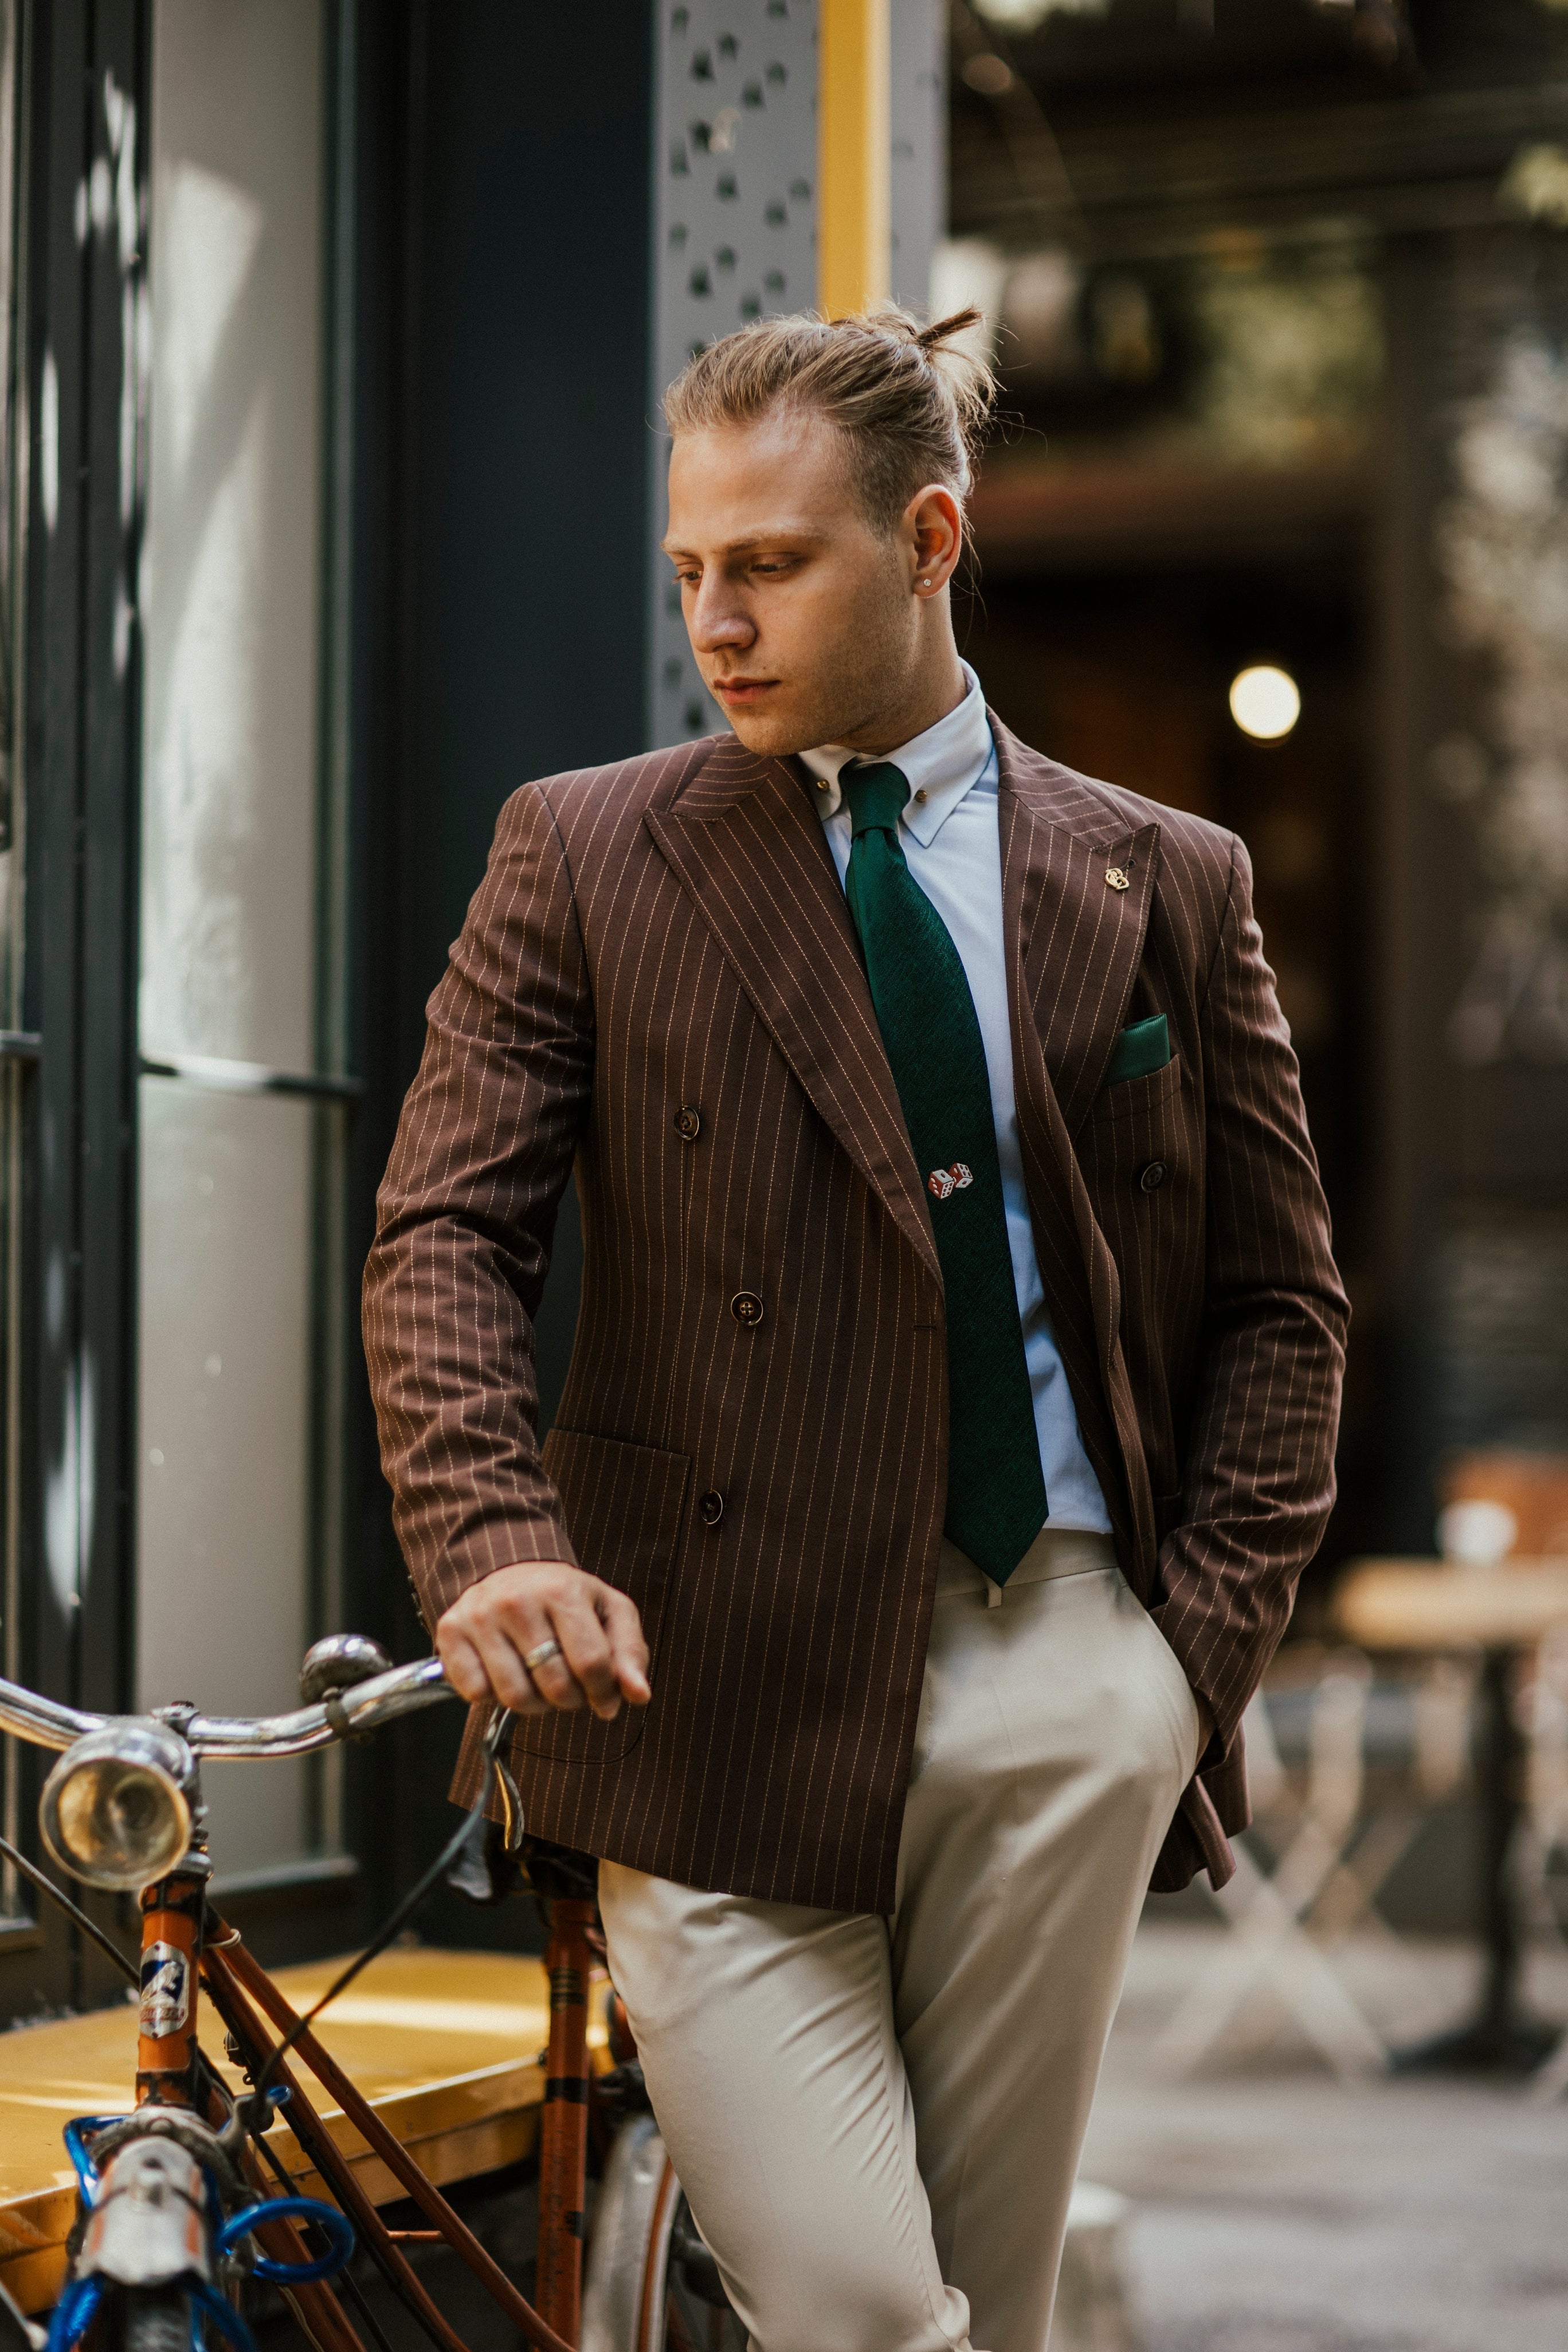 Bojoni Cagliari Brown Striped Double Breasted Suit 2-Piece